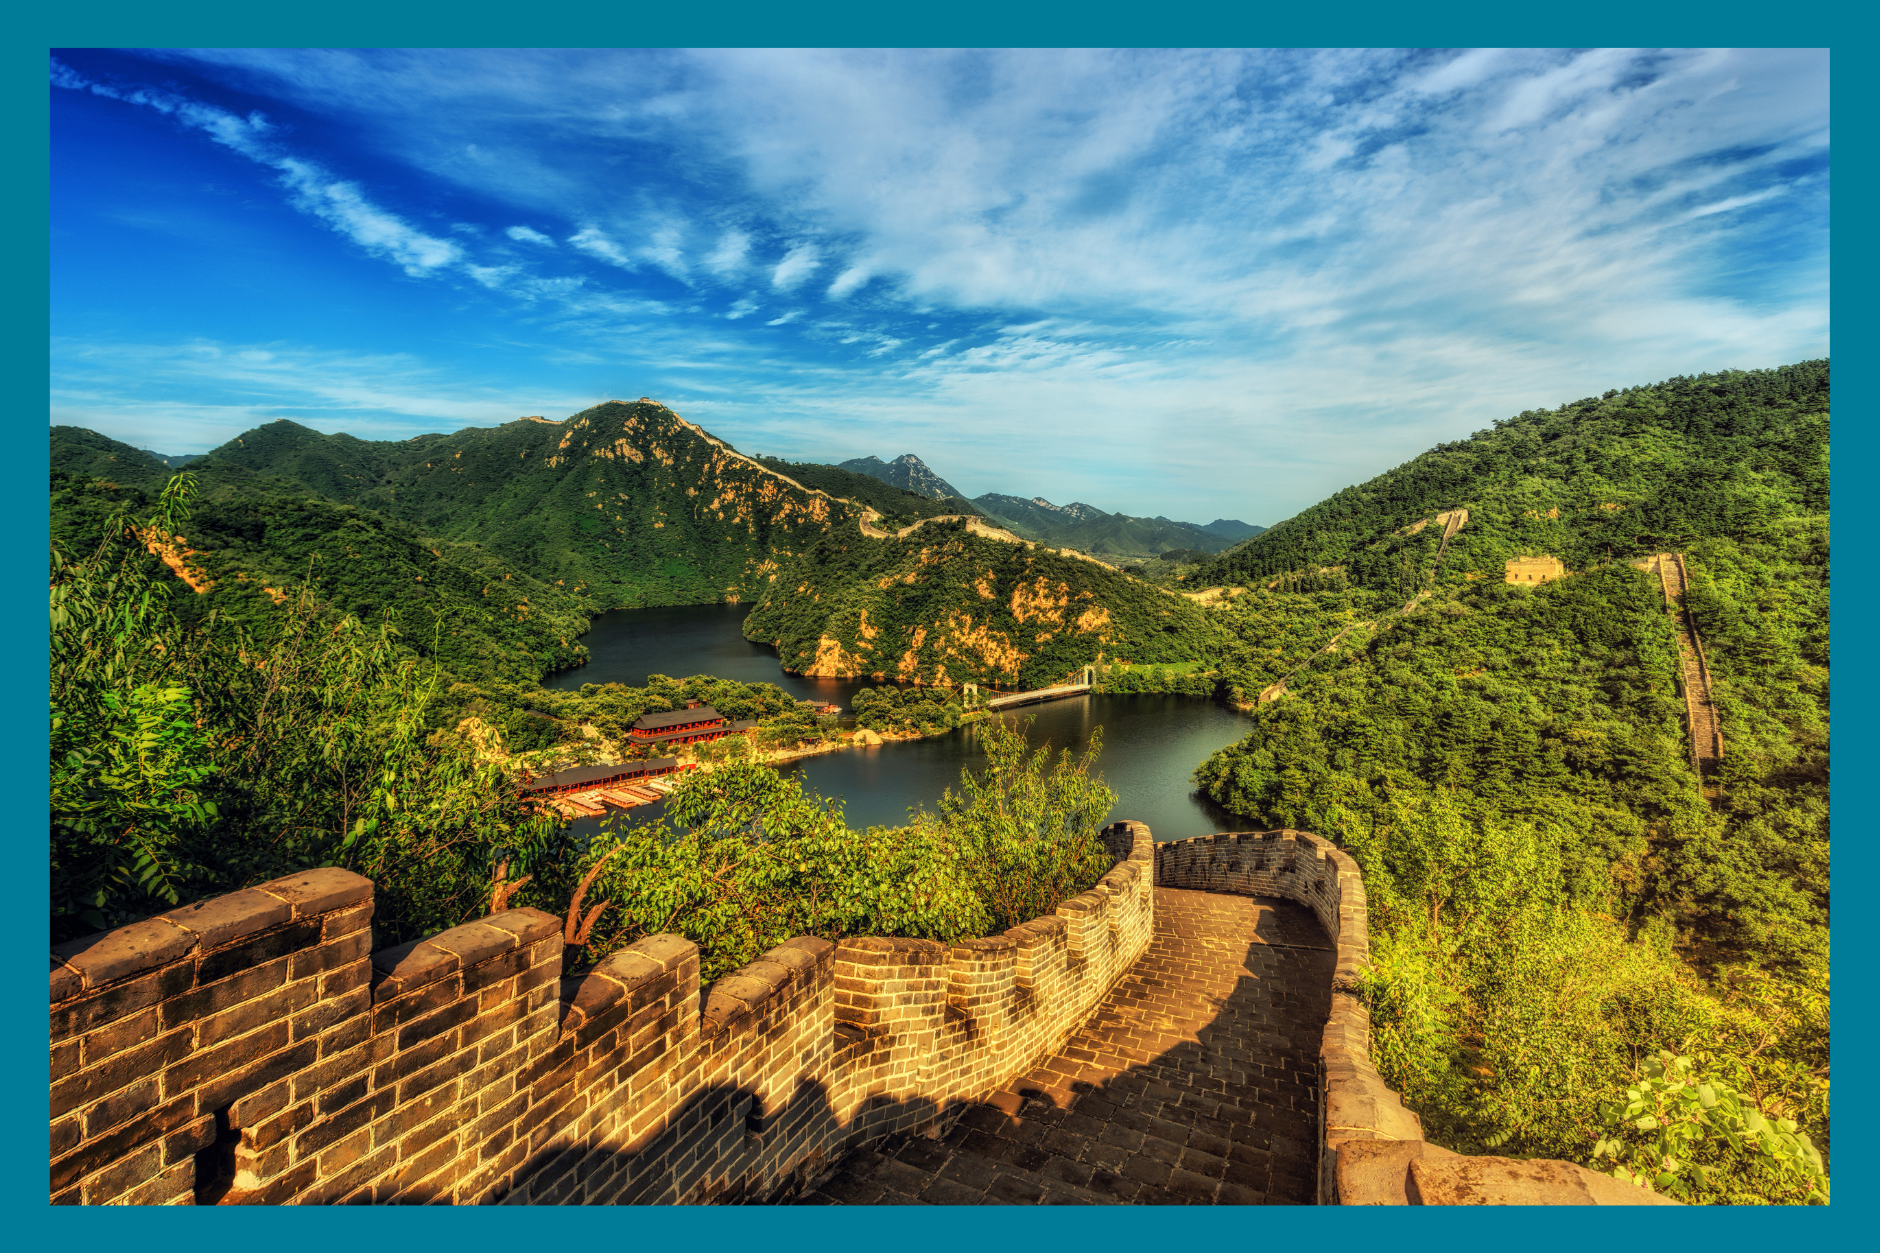 Kiinan muuri ja luontoa